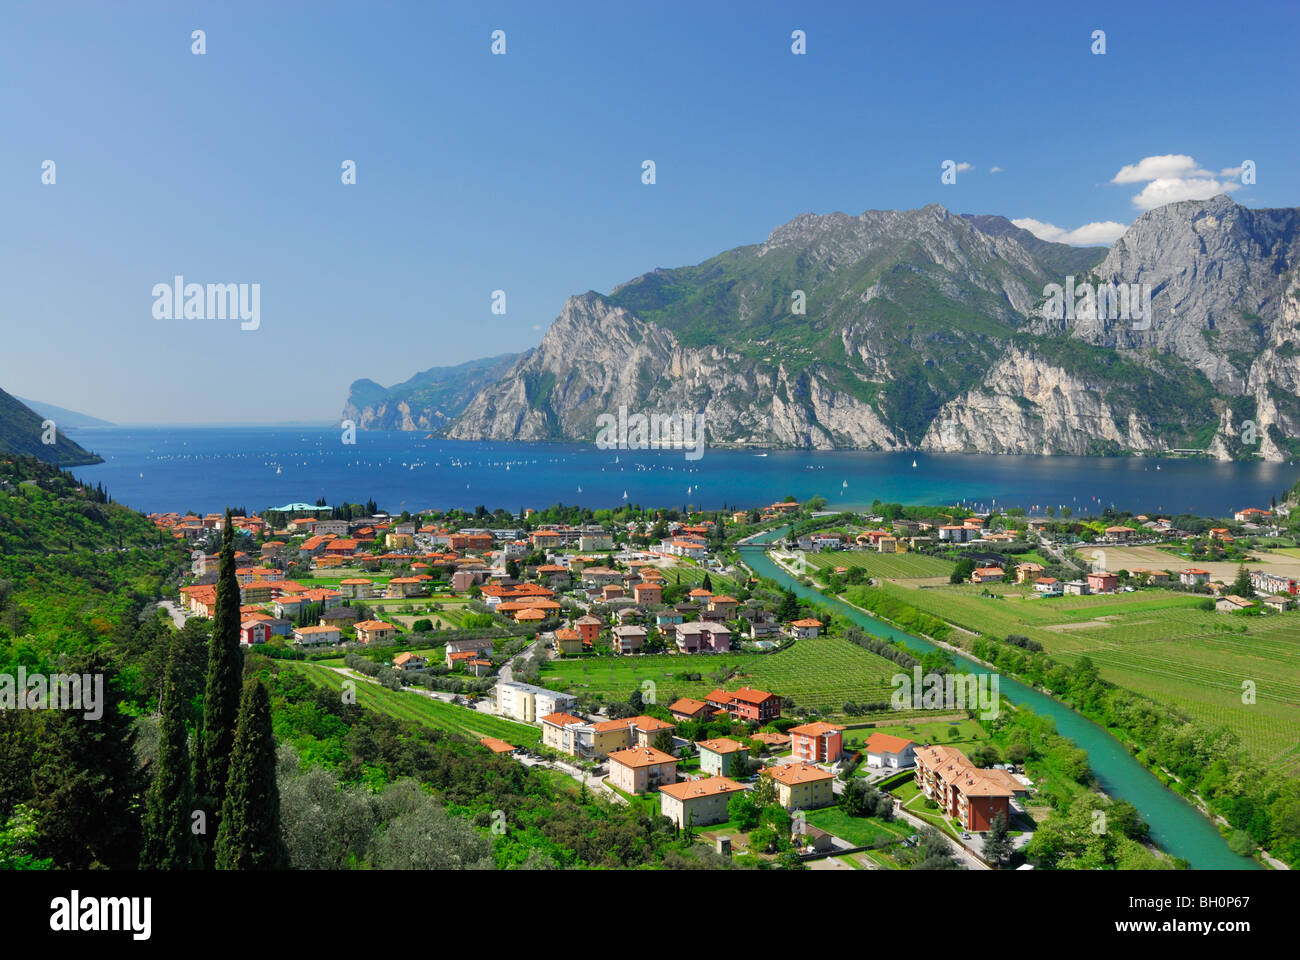 View over Nago-Torbole, Trentino-Alto Adige, Suedtirol, Italy Stock Photo